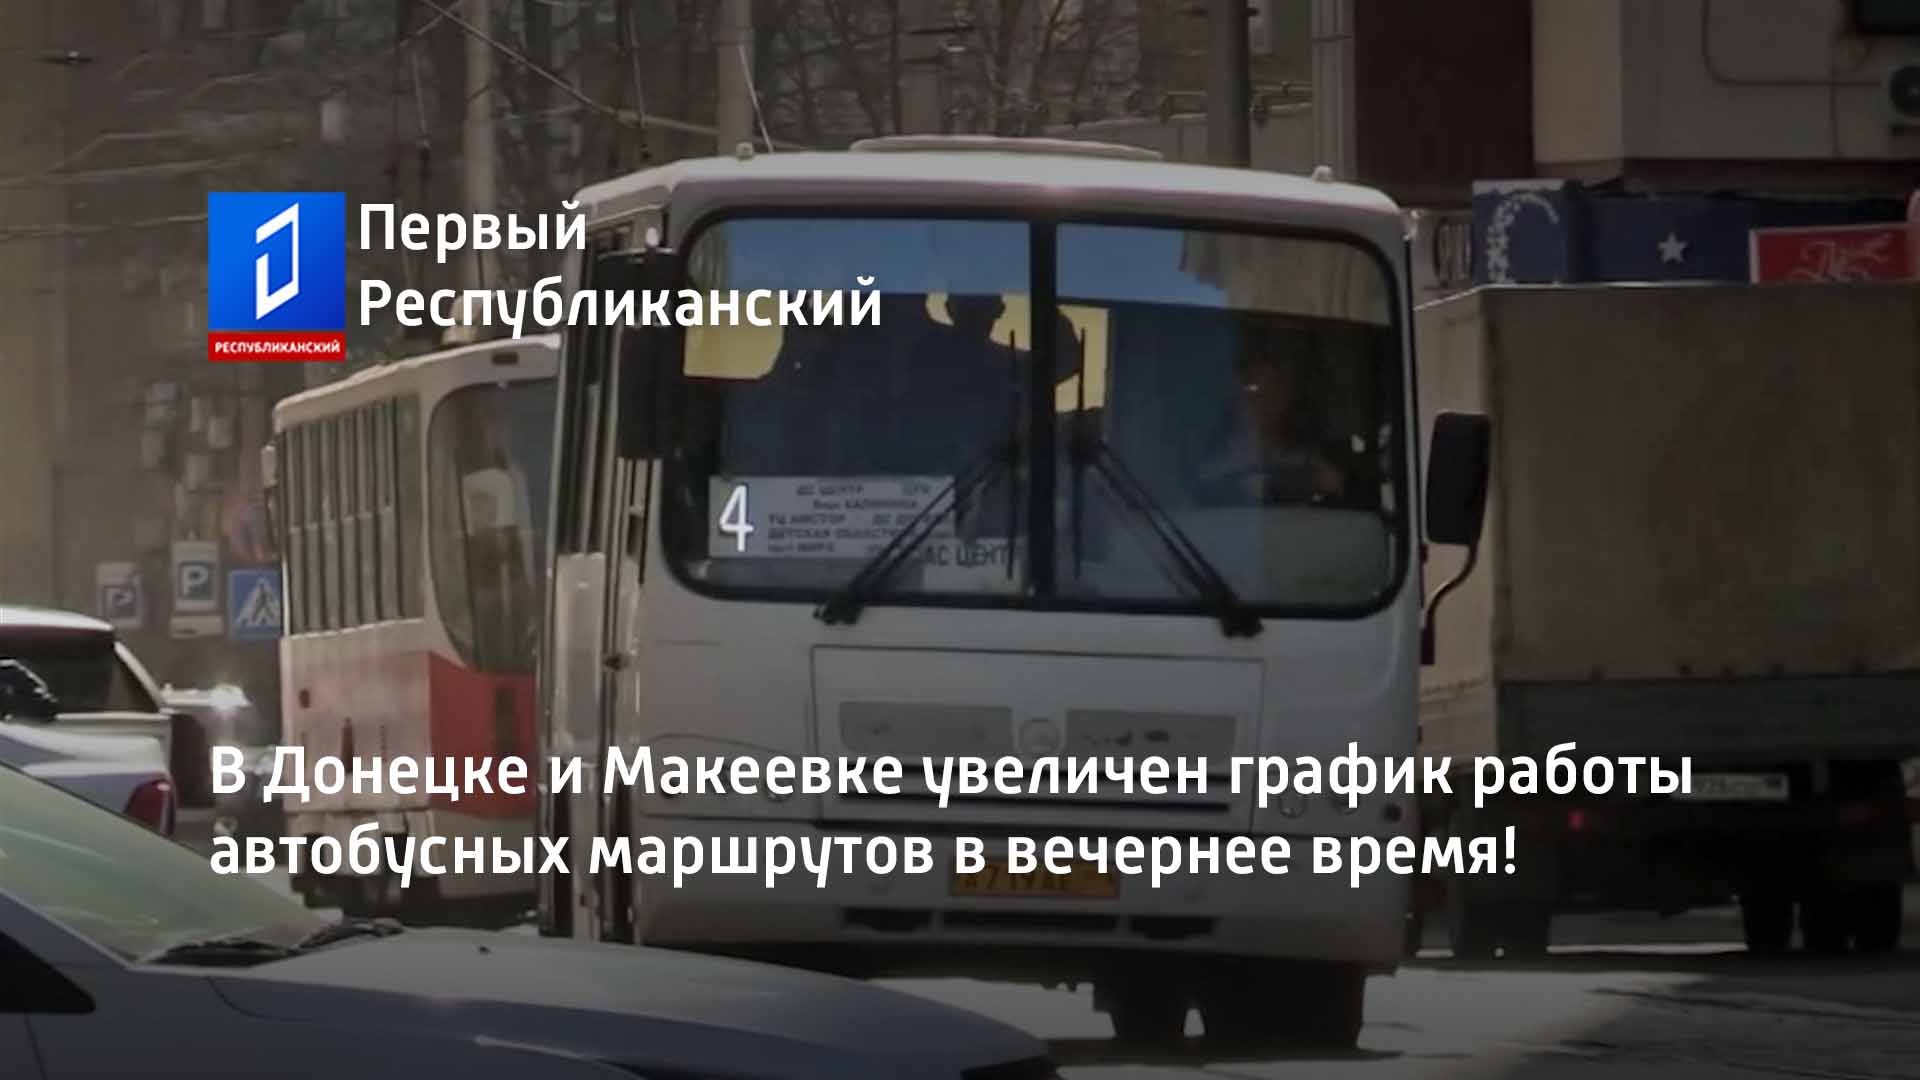 В Донецке и Макеевке увеличен график работы автобусных маршрутов в вечернее время!